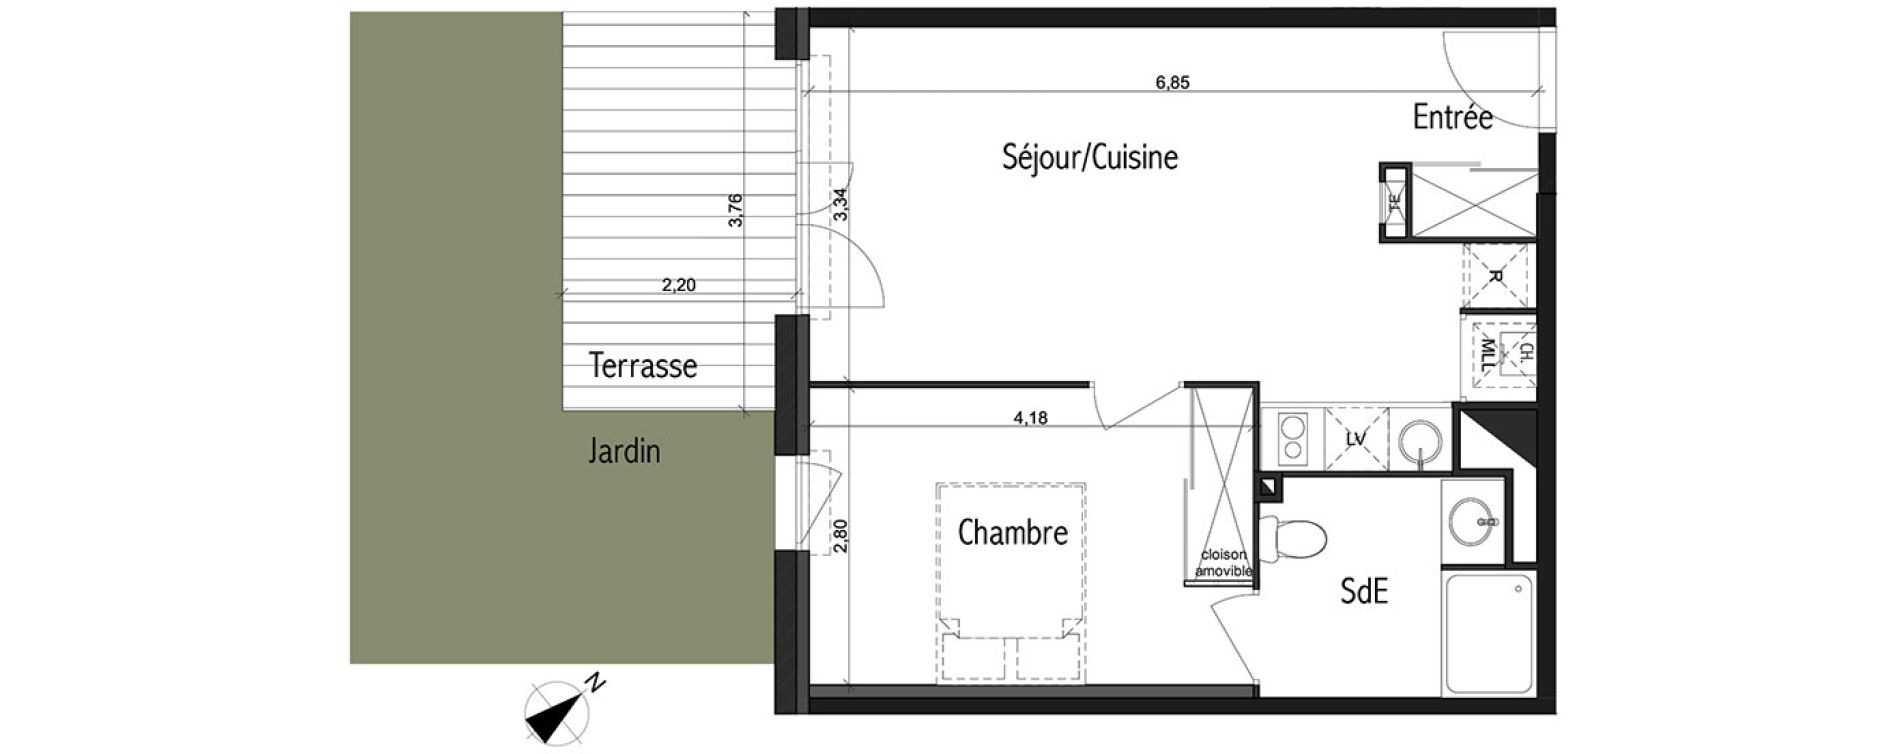  Appartement  T2  de 41 20 m2 RDC SO Les Jardins de Jos phine 